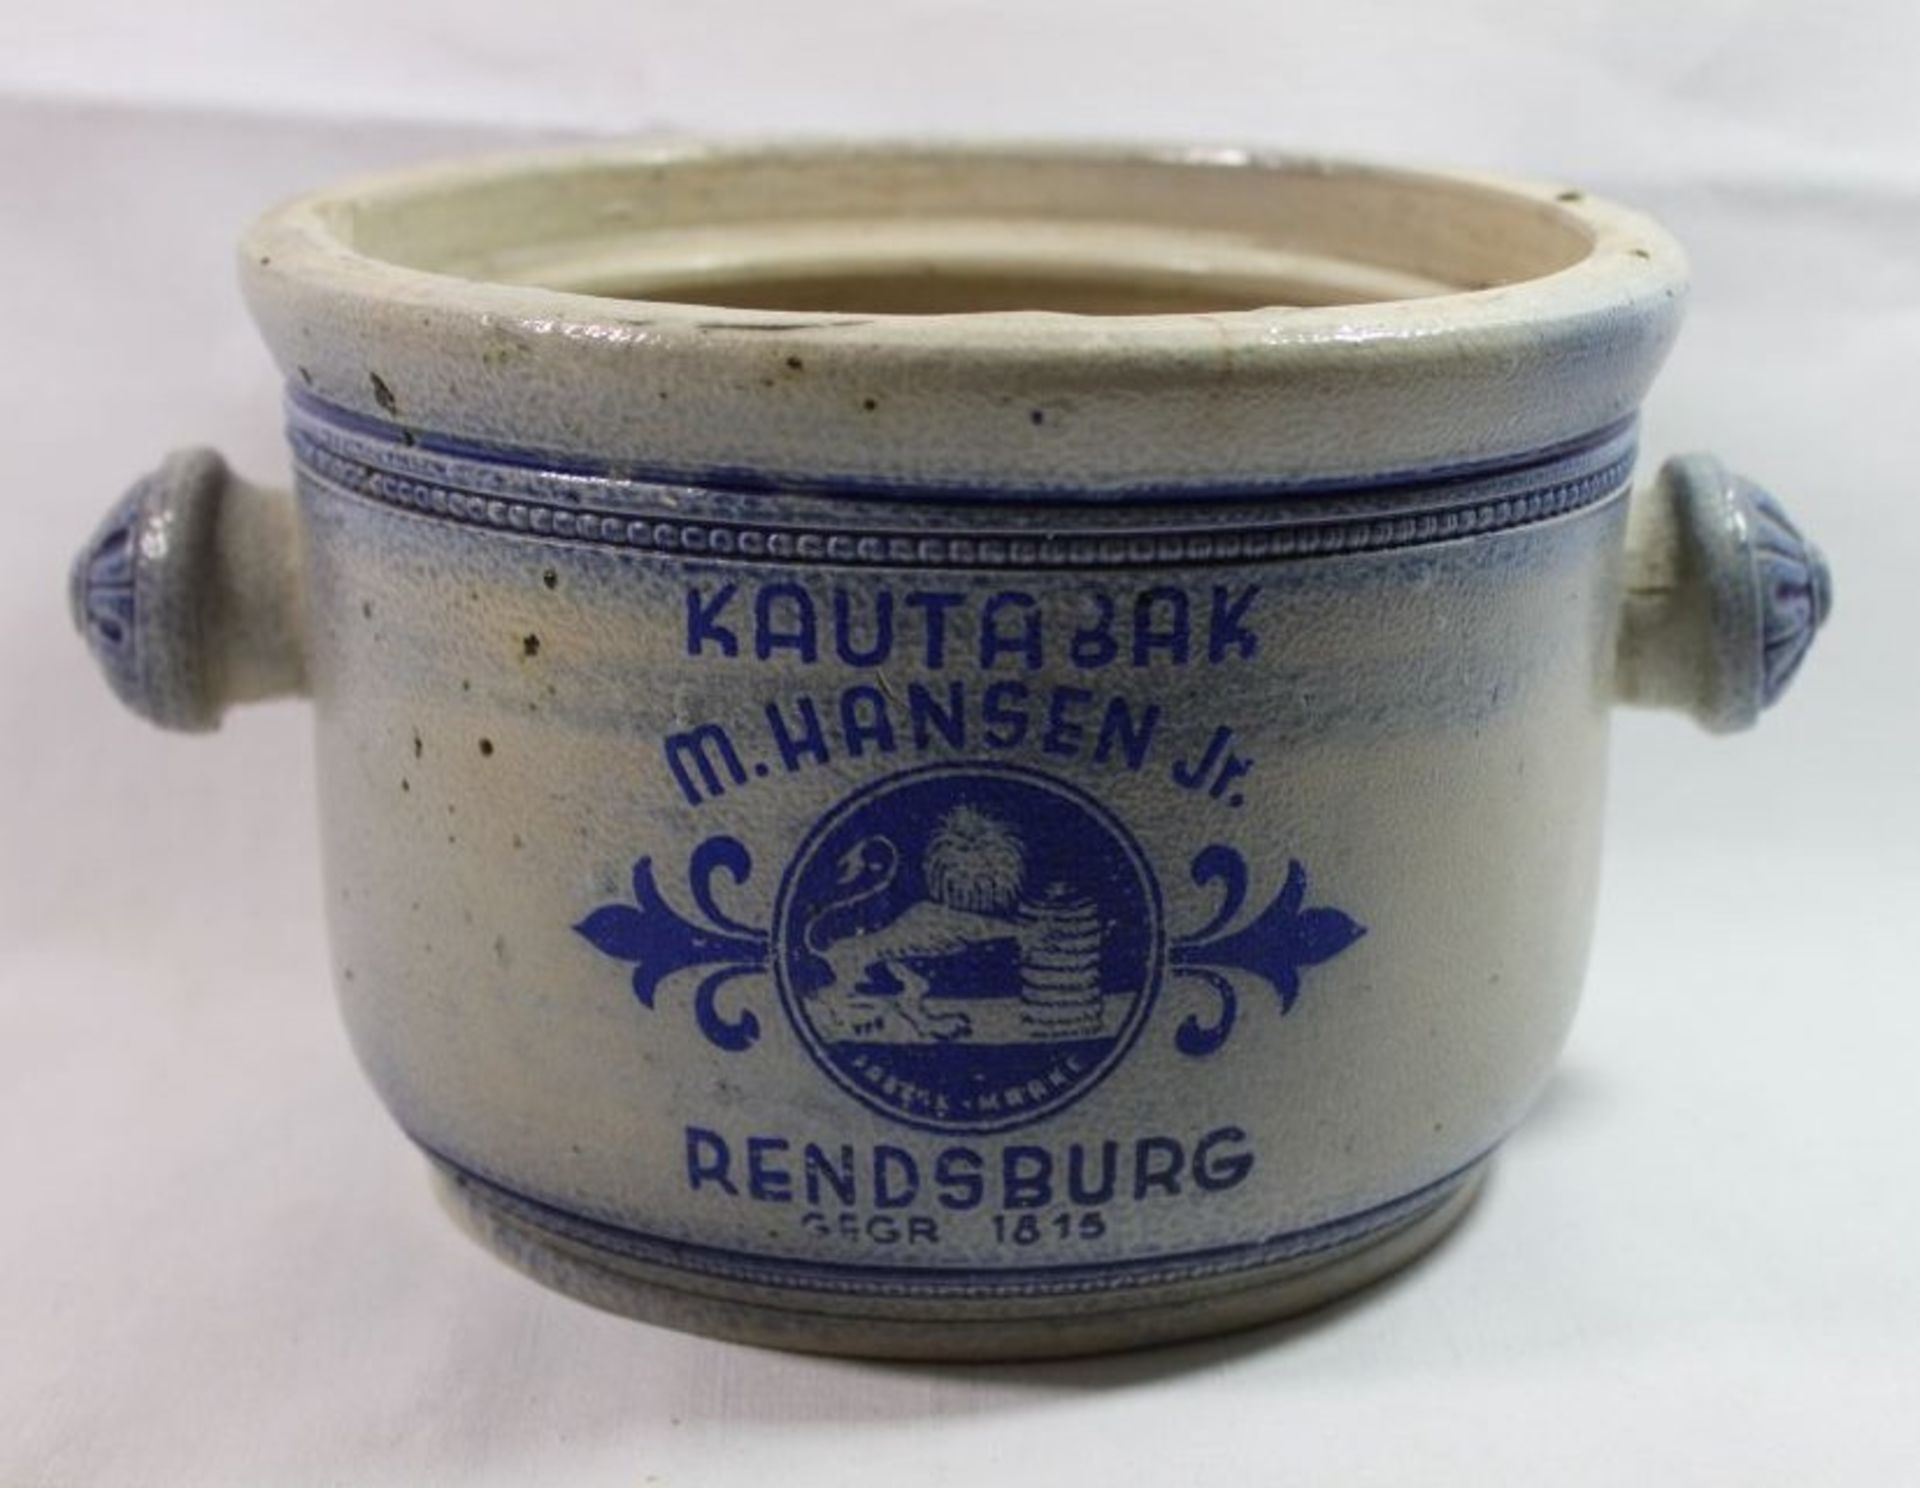 Kautabak-Topf, M. Hansen Jr. Rendsburg, Deckel fehlt, innerer Rand mit Abplatzer, H-13cm D-19cm.